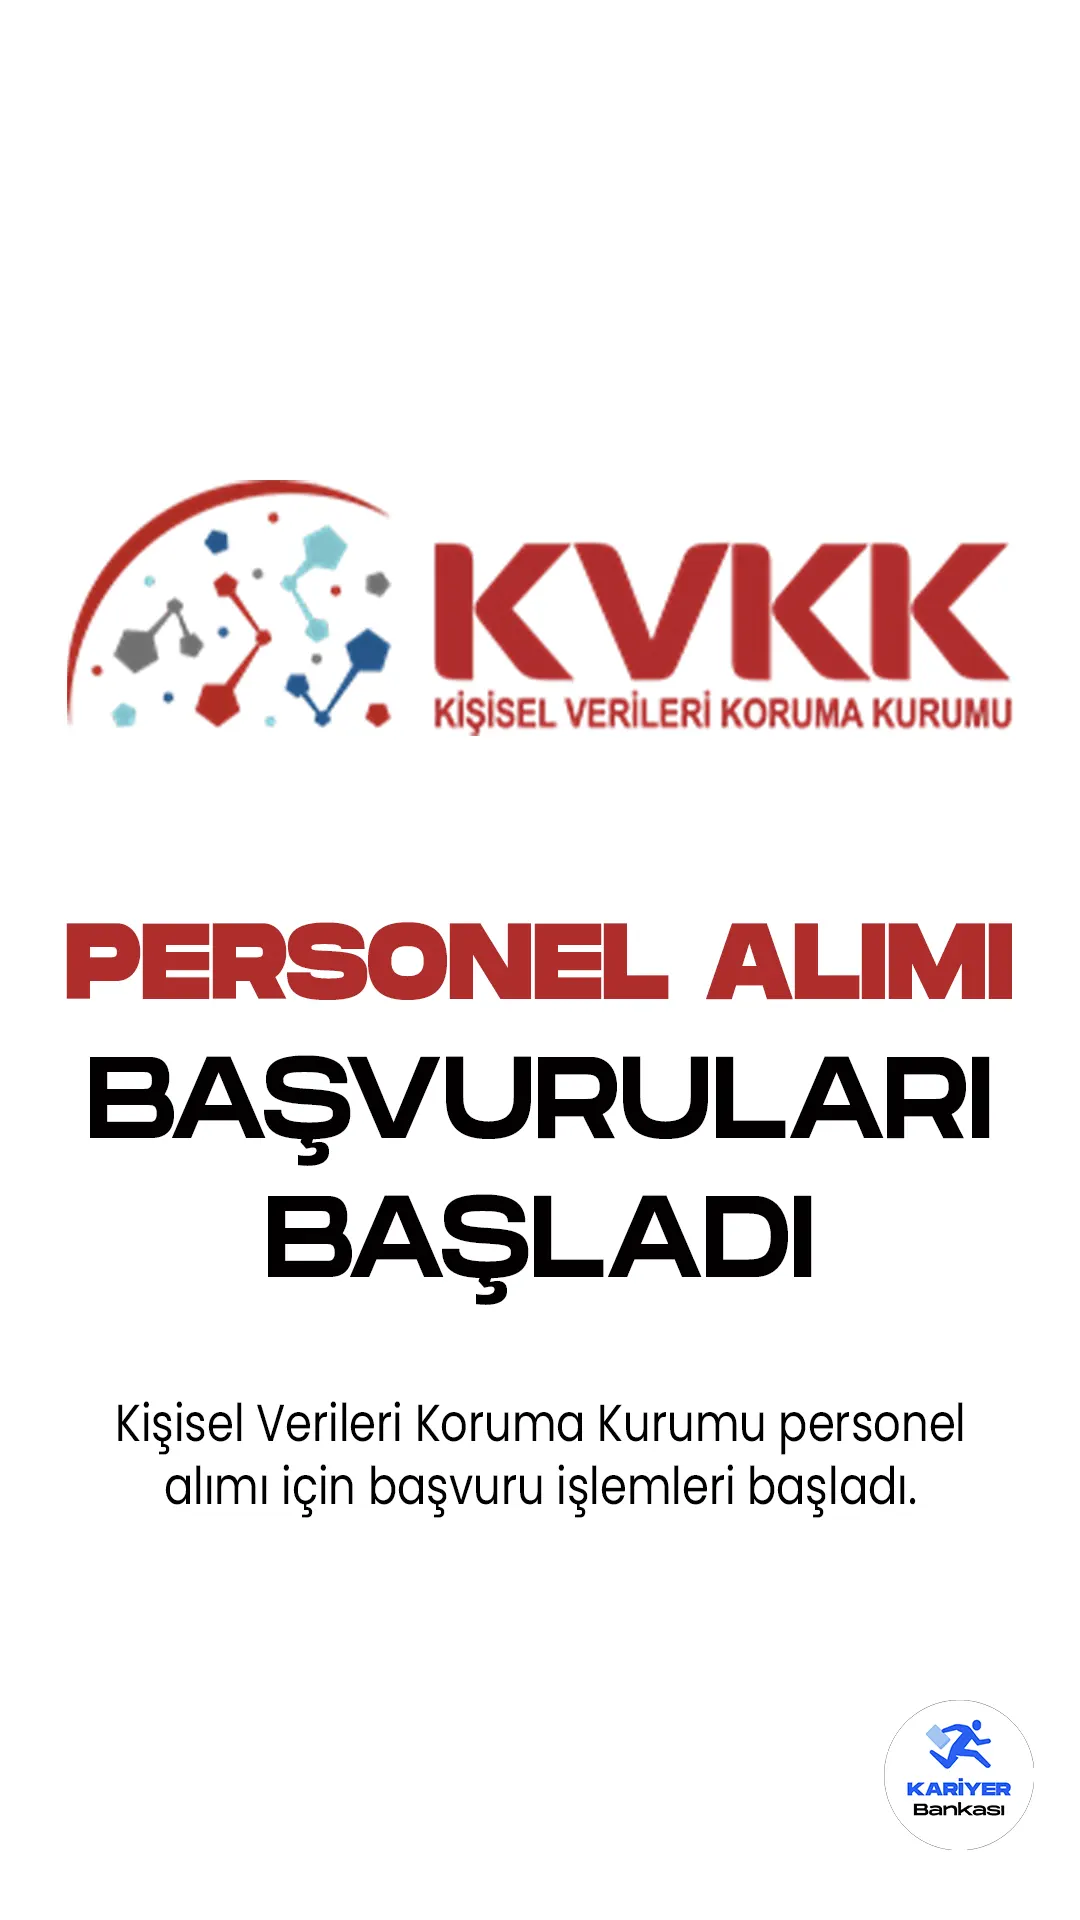 Kişisel Verileri Koruma Kurumu (KVKK) personel alımı başvuruları başladı. Cumhurbaşkanlığı SBB Kamu ilan sitesinde yayımlanan duyuruda, KVKK'ya 16 personel alımı yapılacağı kaydedildi. Başvurular 4 Mayıs-22 Mayıs 2023 tarihleri arasında alınacak. Başvuru yapacak adayların şartları dikkatle incelemesi gerekmektedir.